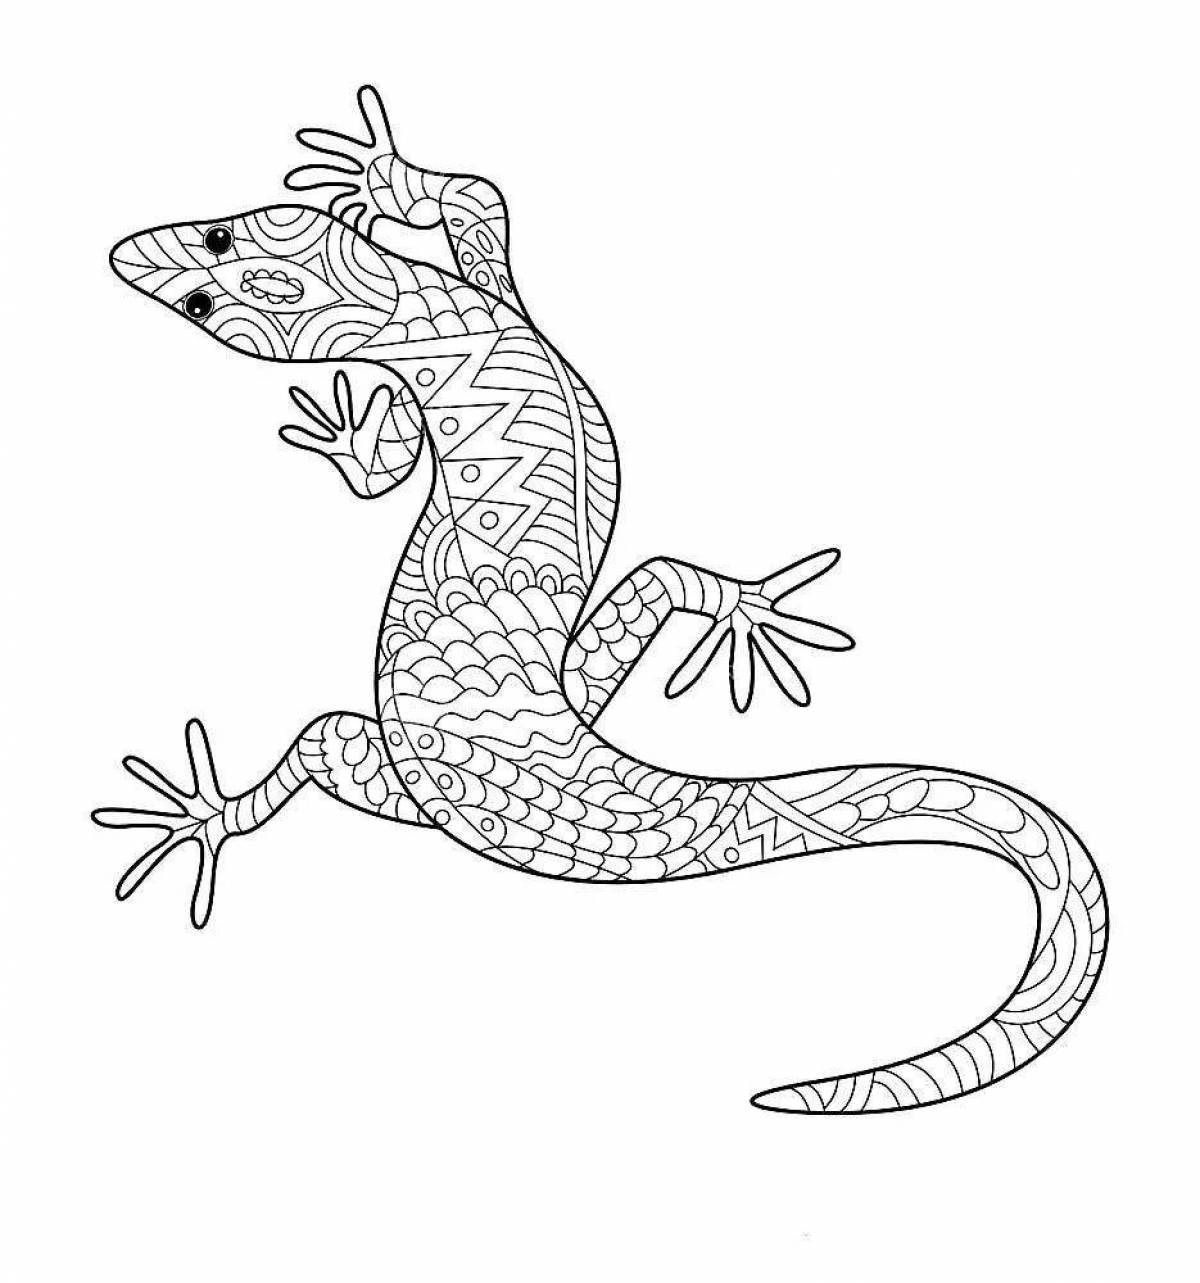 Coloring book playful antistress lizard